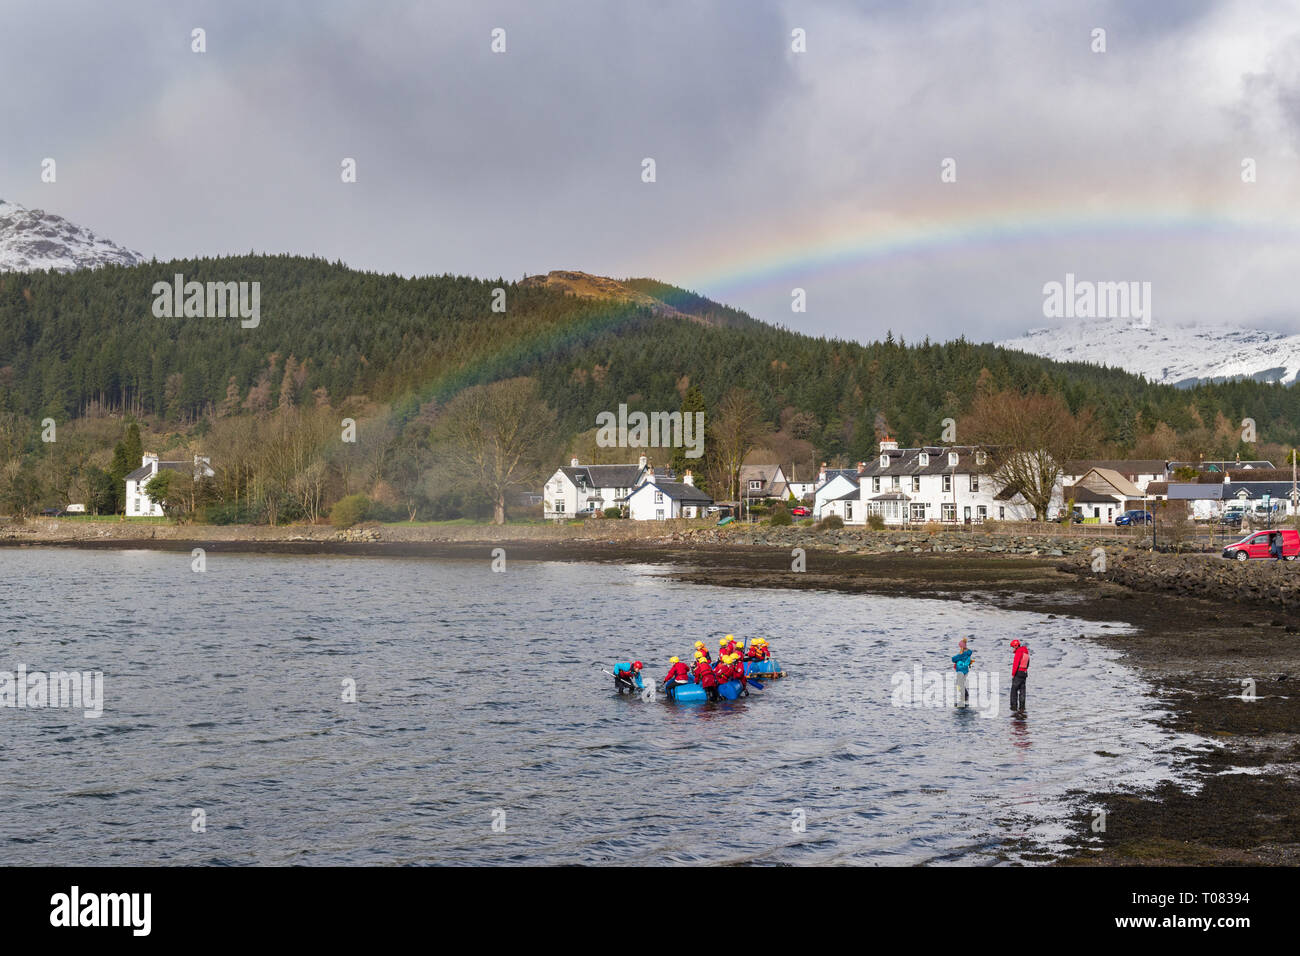 Glen Arbor, Argyll und Bute, Schottland - Jugendliche trotzen das kühle Wasser des Loch Goil unter einem Regenbogen beim Flossbau Aktivität Stockfoto